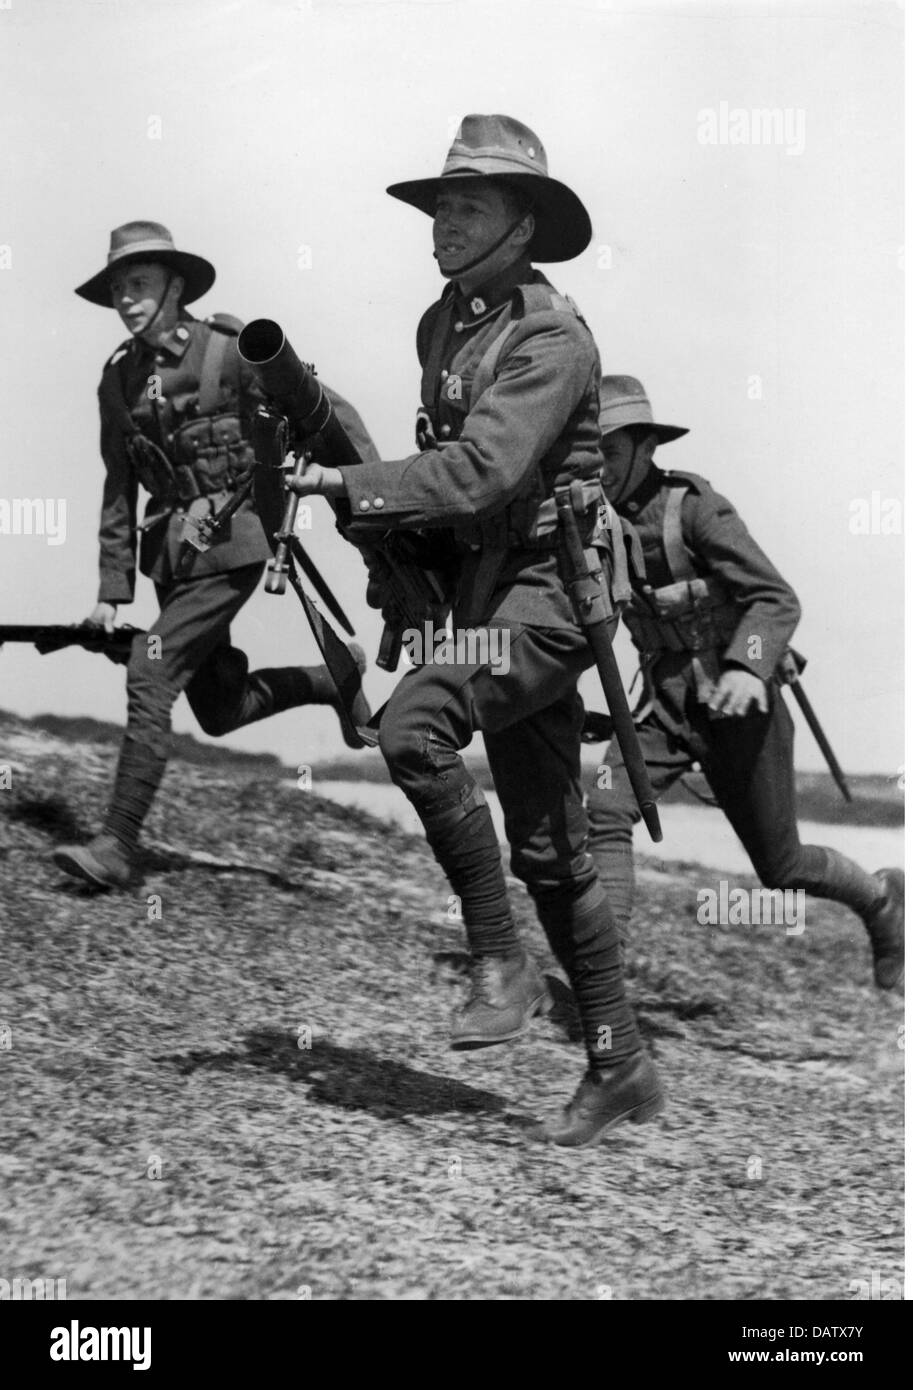 Militär, Australien, australische Soldaten während einer Übung, um 1940, zusätzliche-Rechte-Clearences-nicht verfügbar Stockfoto